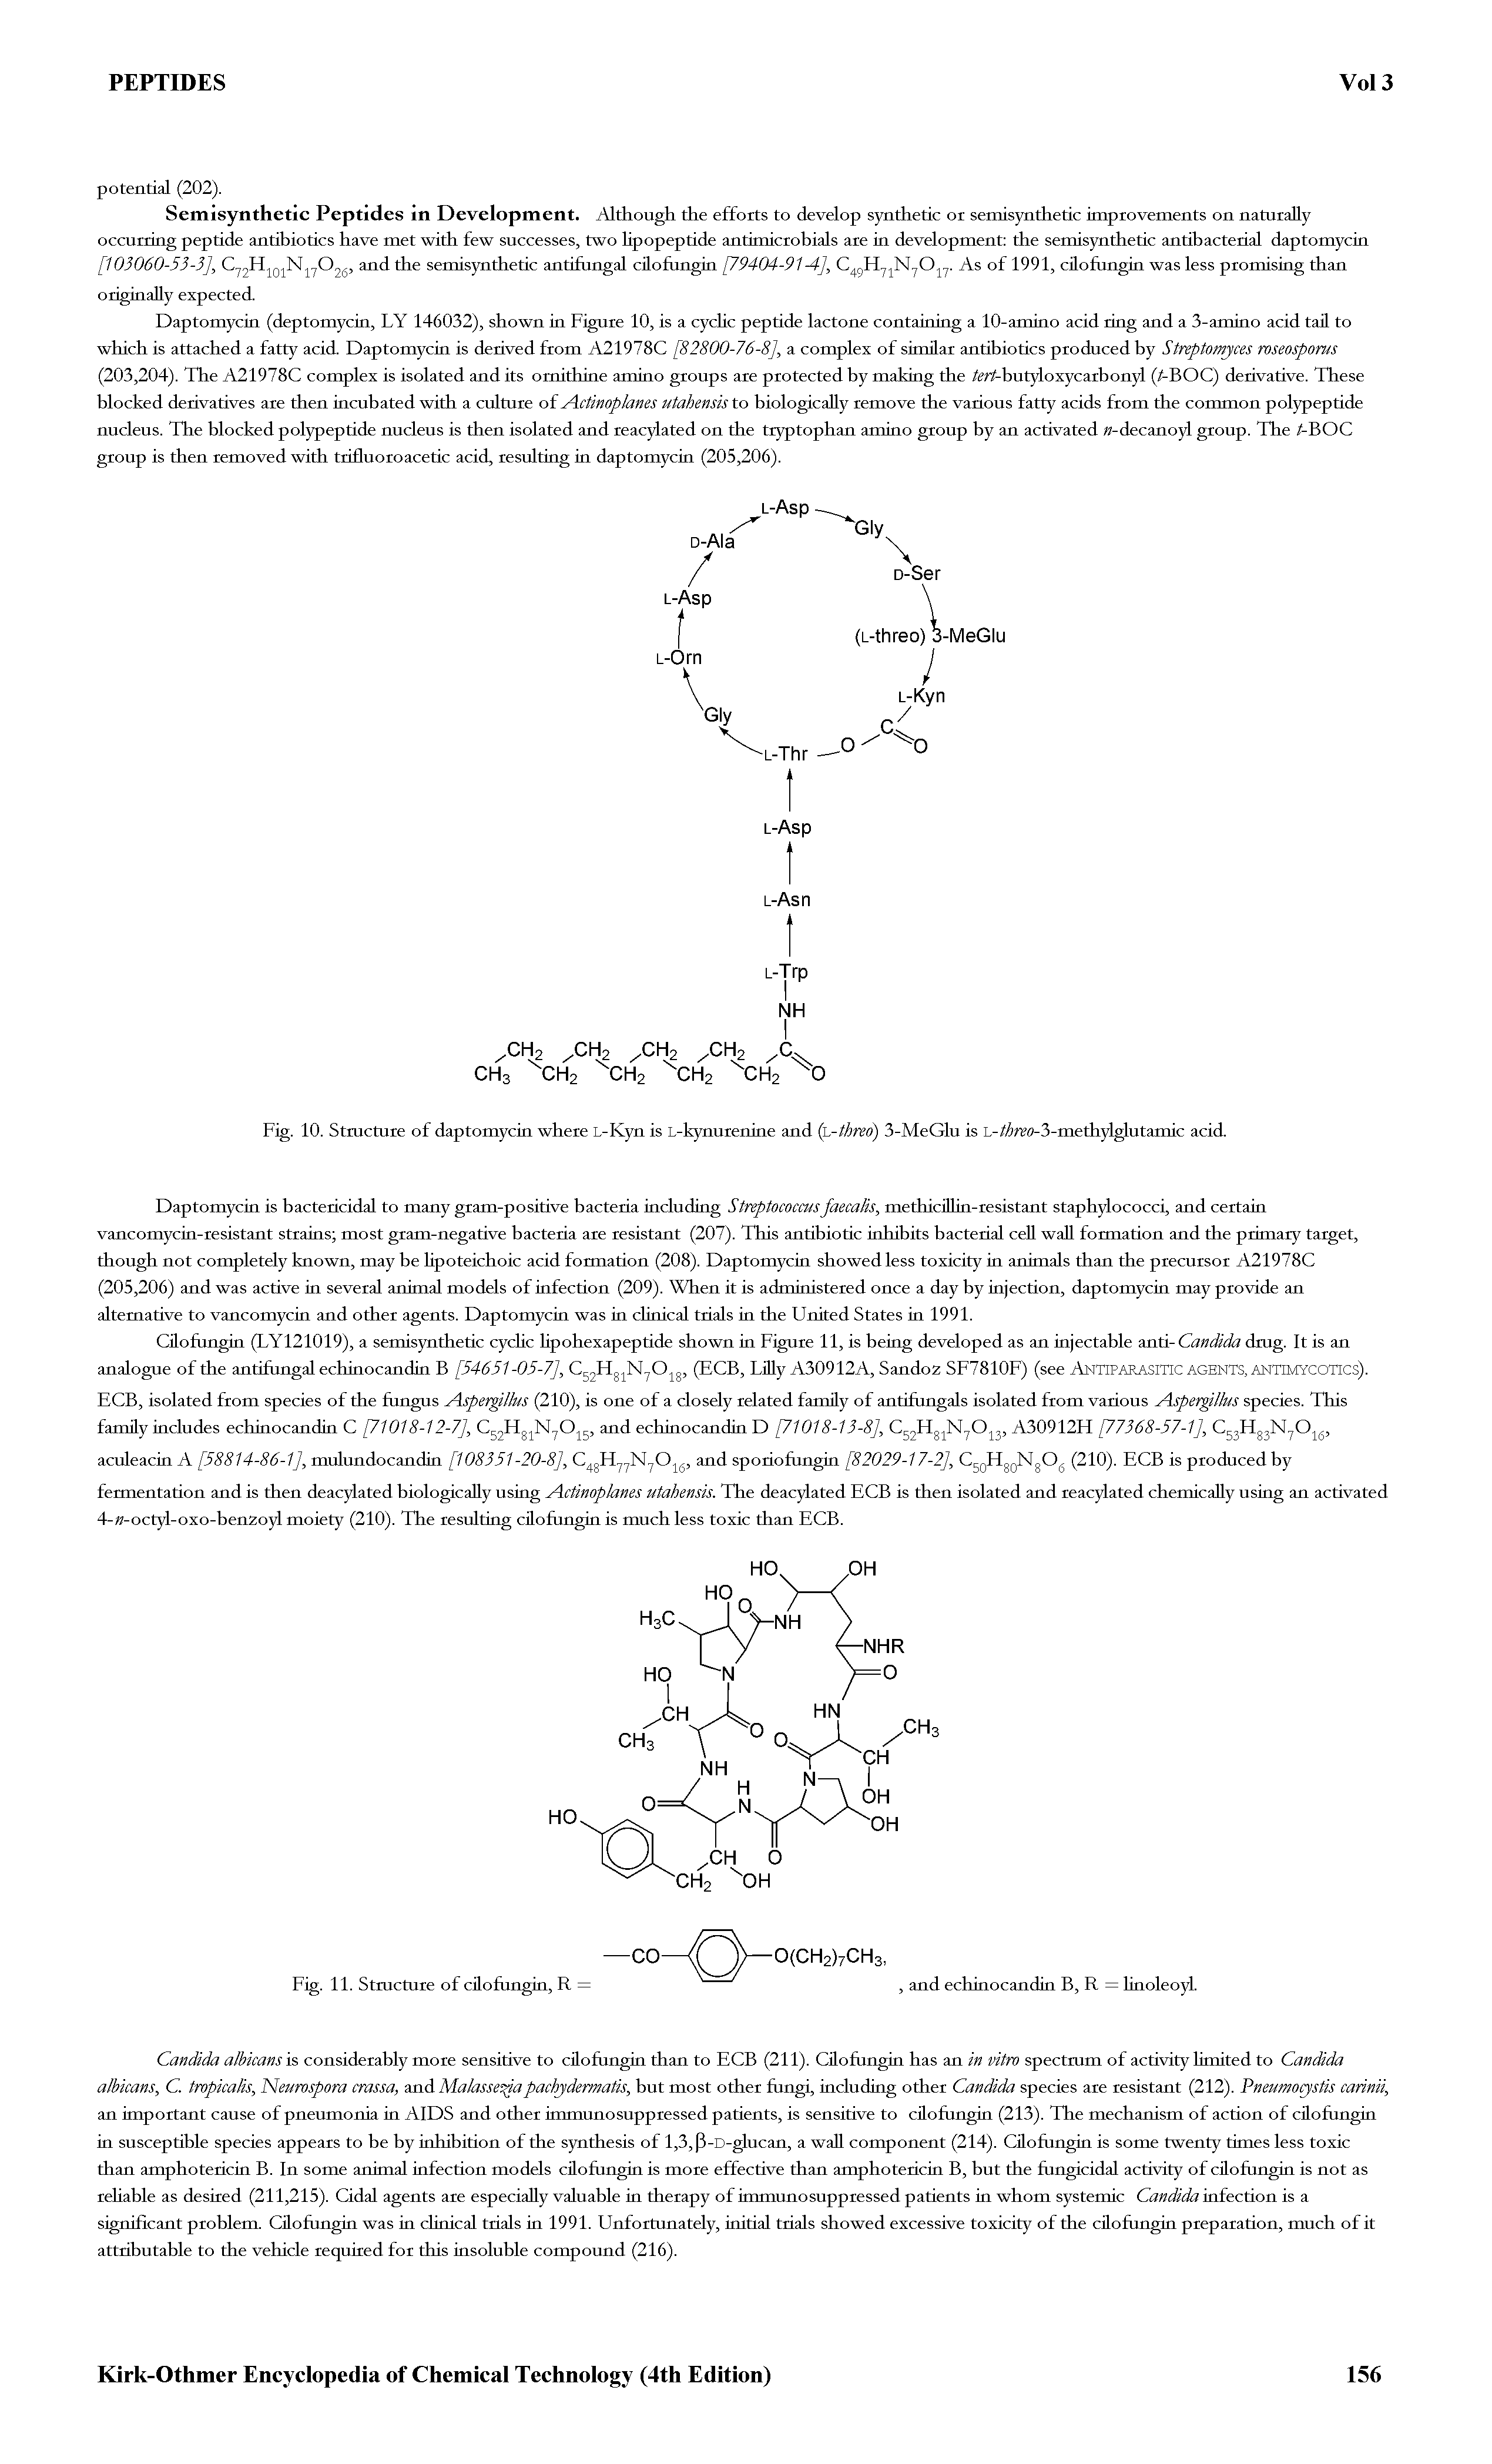 Fig. 10. Stmcture of daptomycin where L-Kyn is L-kynurenine and (h-threo) 3-MeGlu is L-// fi (9-3-methylglutamic acid.